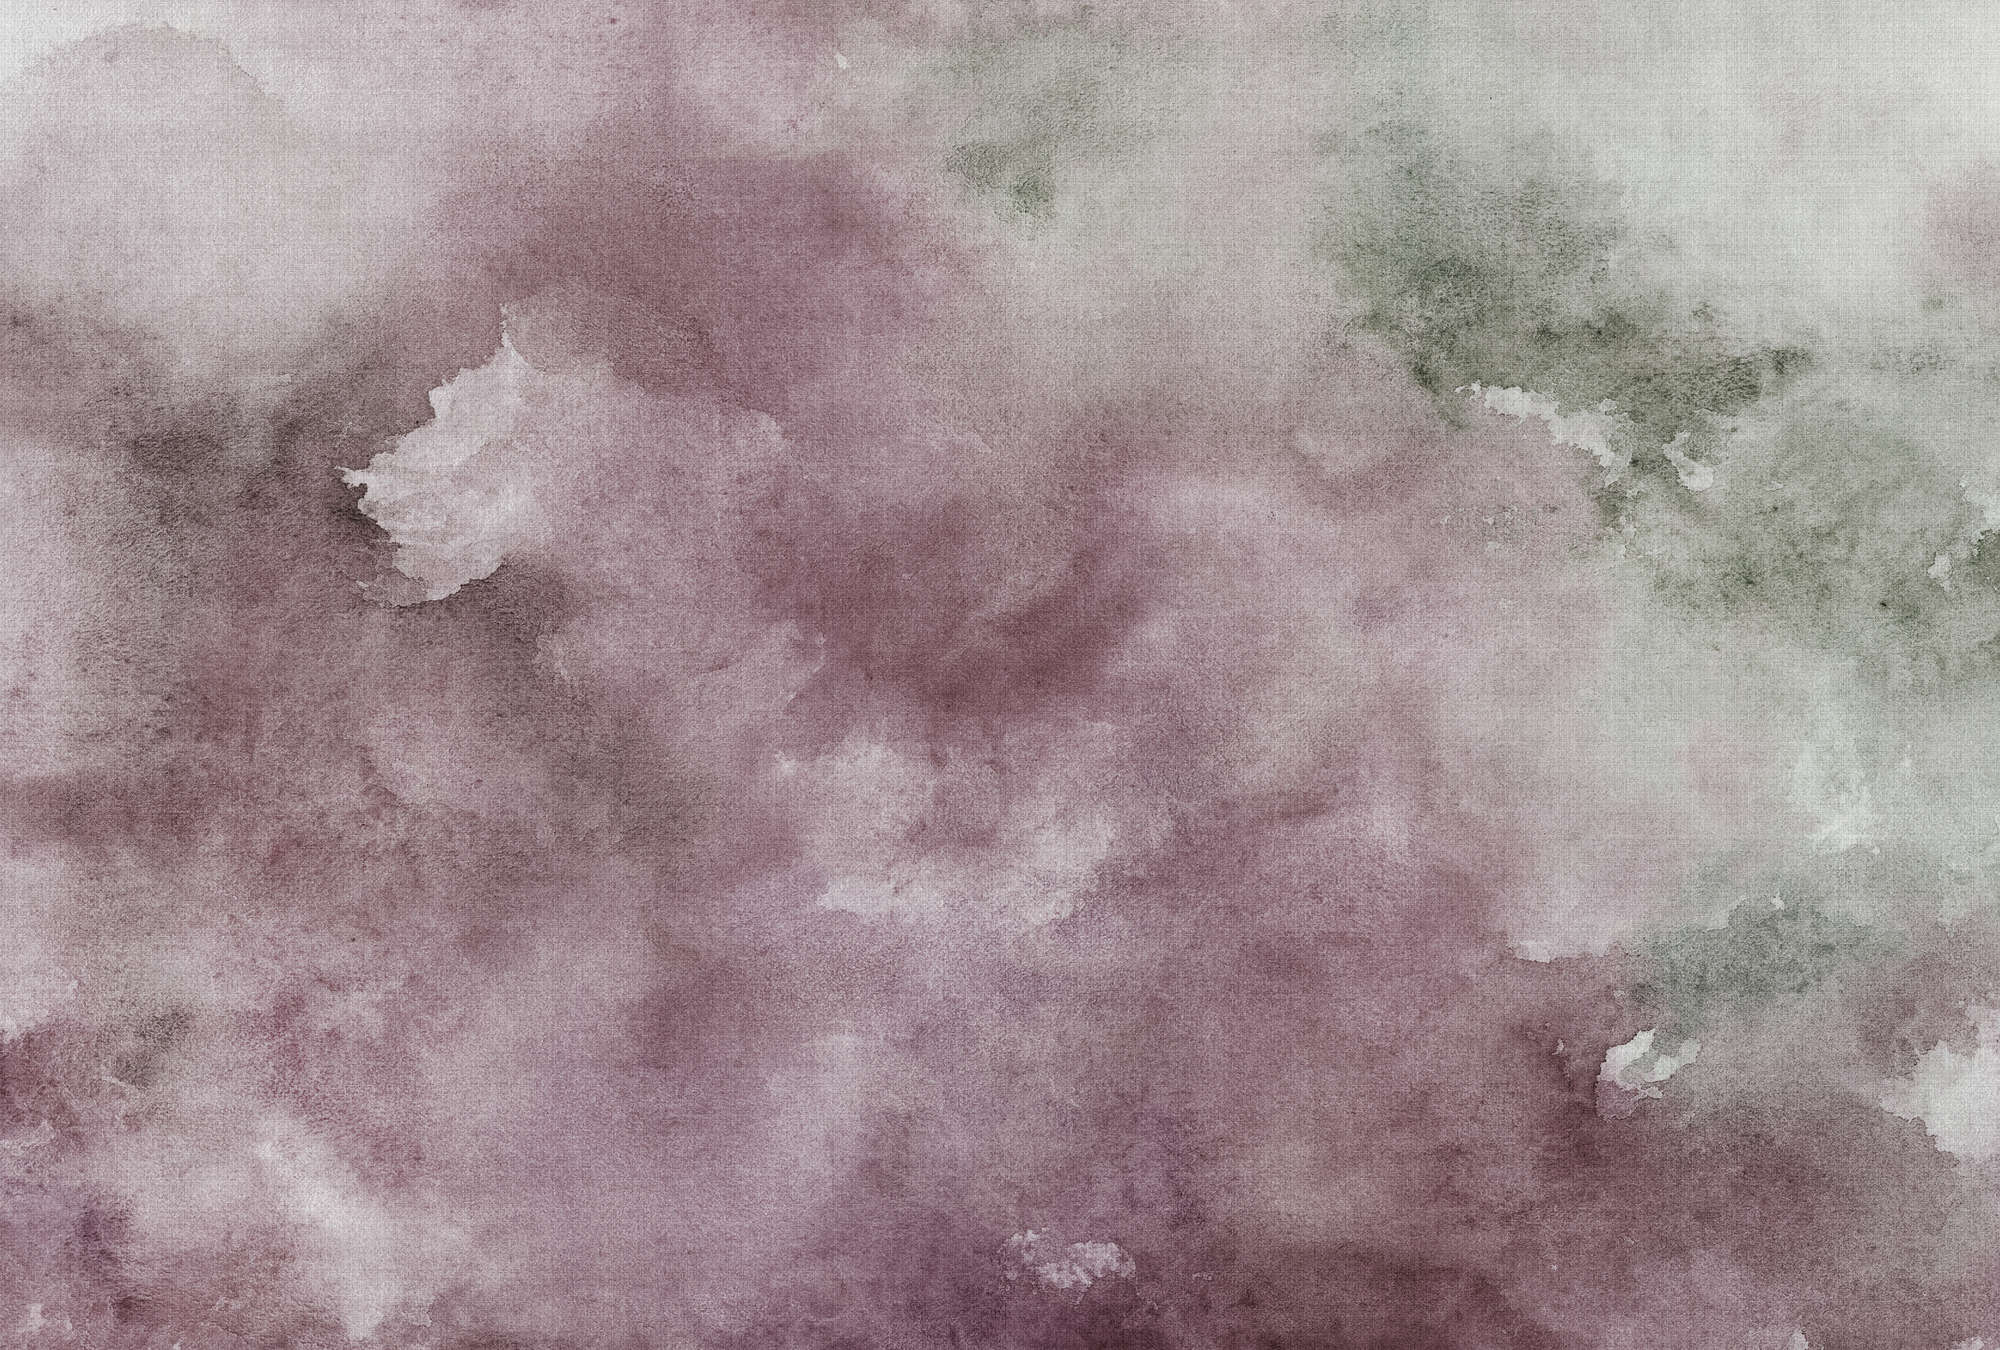             Watercolours 2 - Carta da parati motivo acquerello viola - texture lino naturale - beige, marrone - tessuto non tessuto liscio di qualità superiore
        